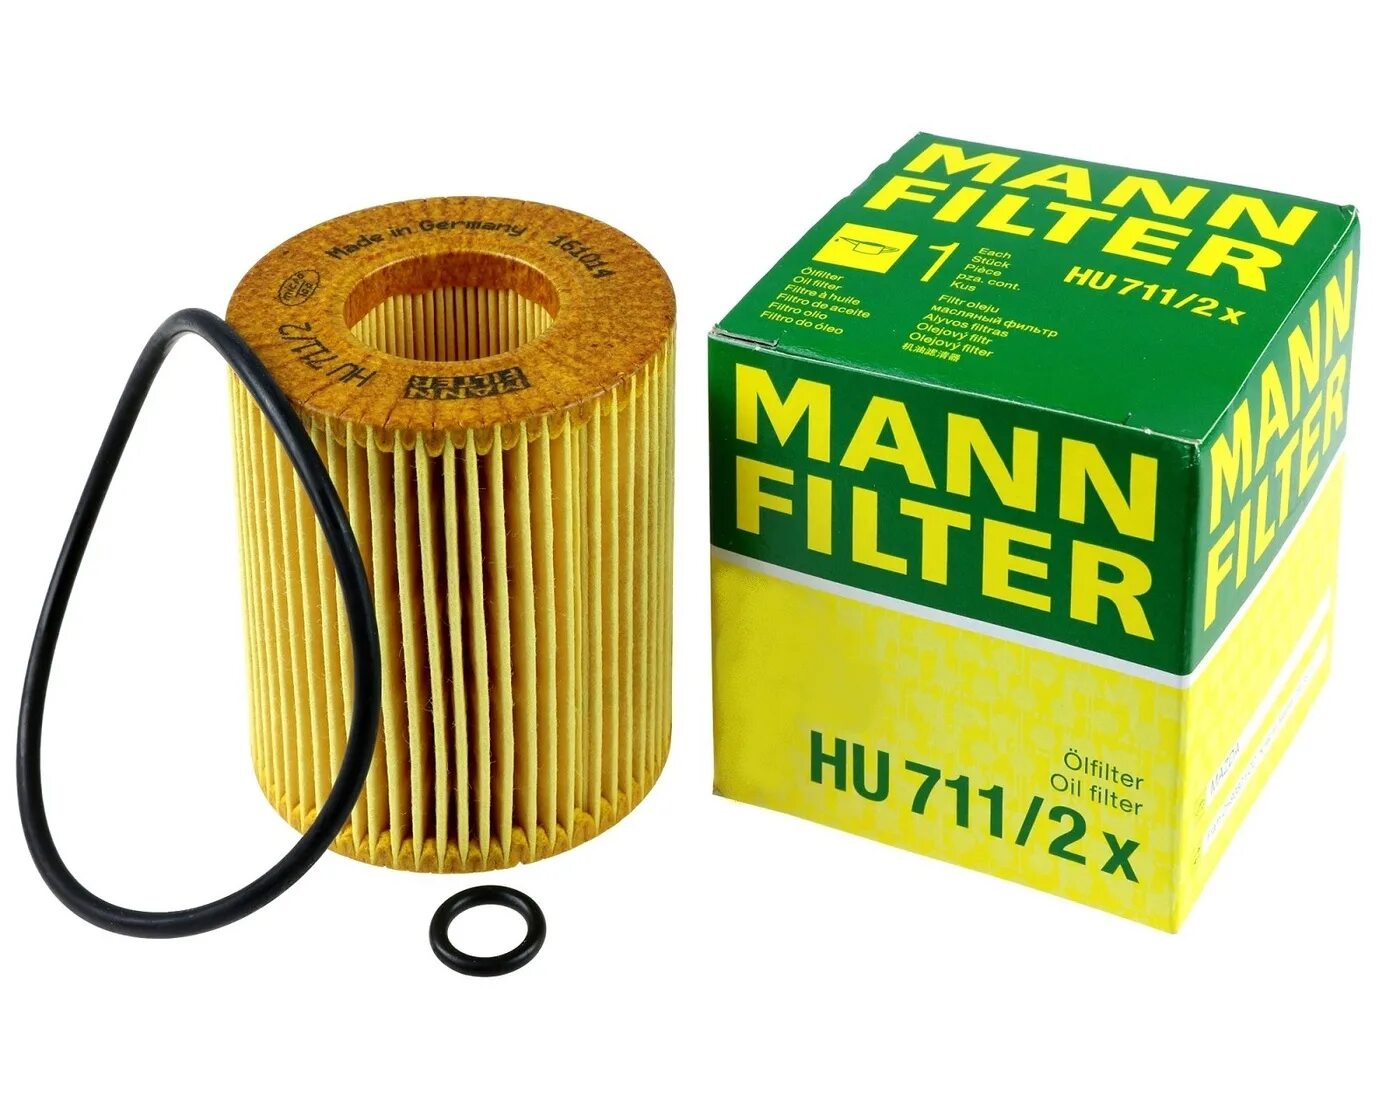 Масляный манн. Hu 711/2 x Mann Filter. Фильтр масляный Mann w914/28. Фильтр масляный Mann hu 8008 z. Фильтр масляный Mann Mazda cx7 2.3 Turbo.